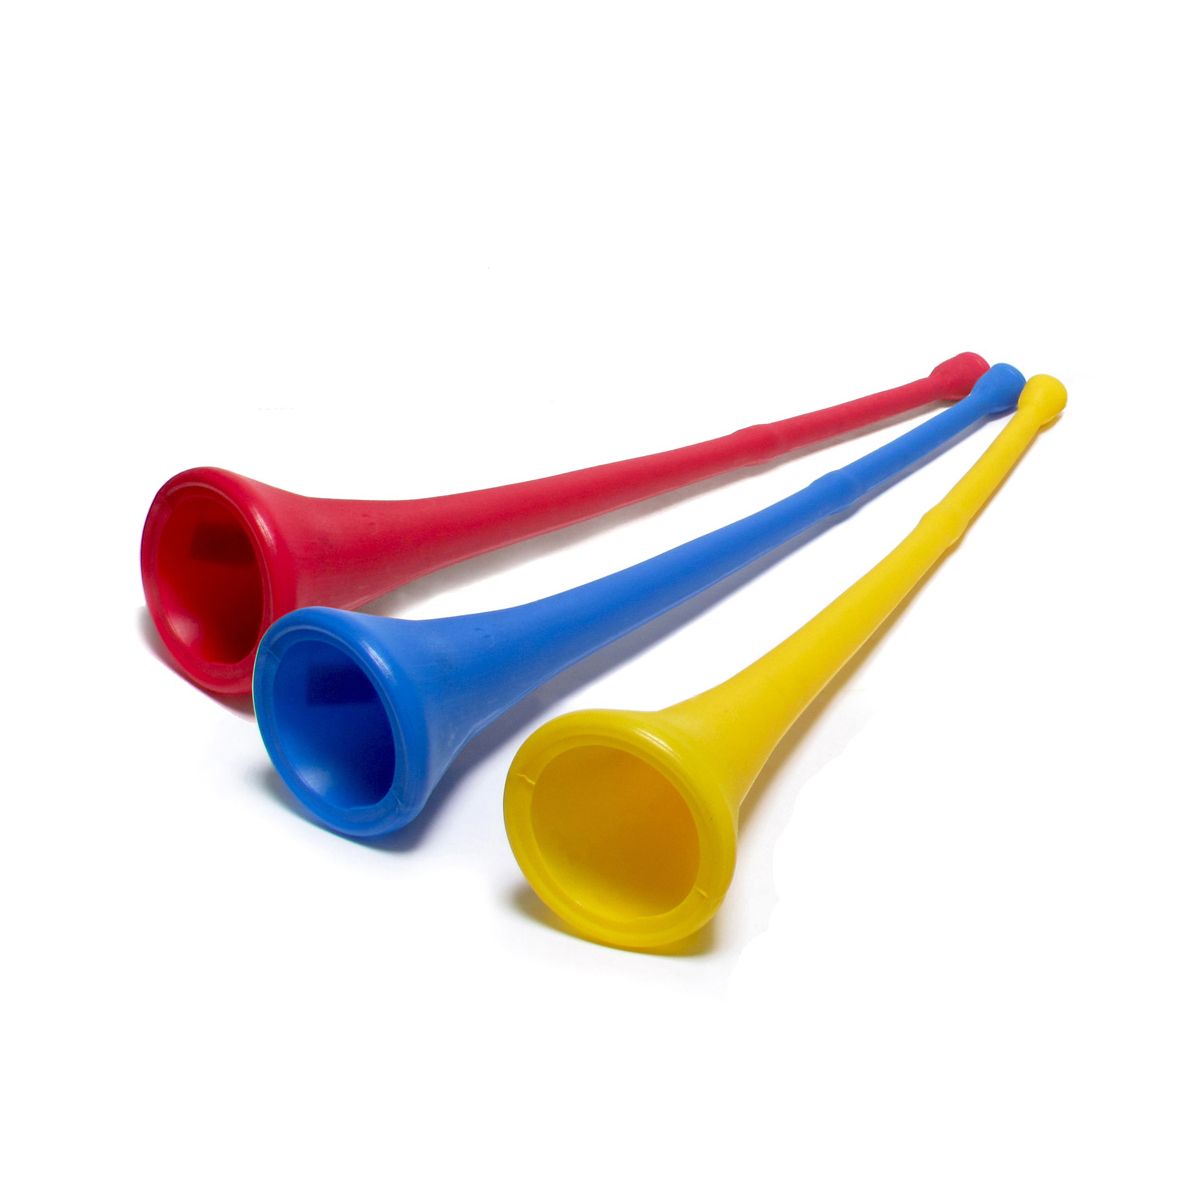 Trąbka Wuwuzela gigant (62 cm) Arpex (SP5894)